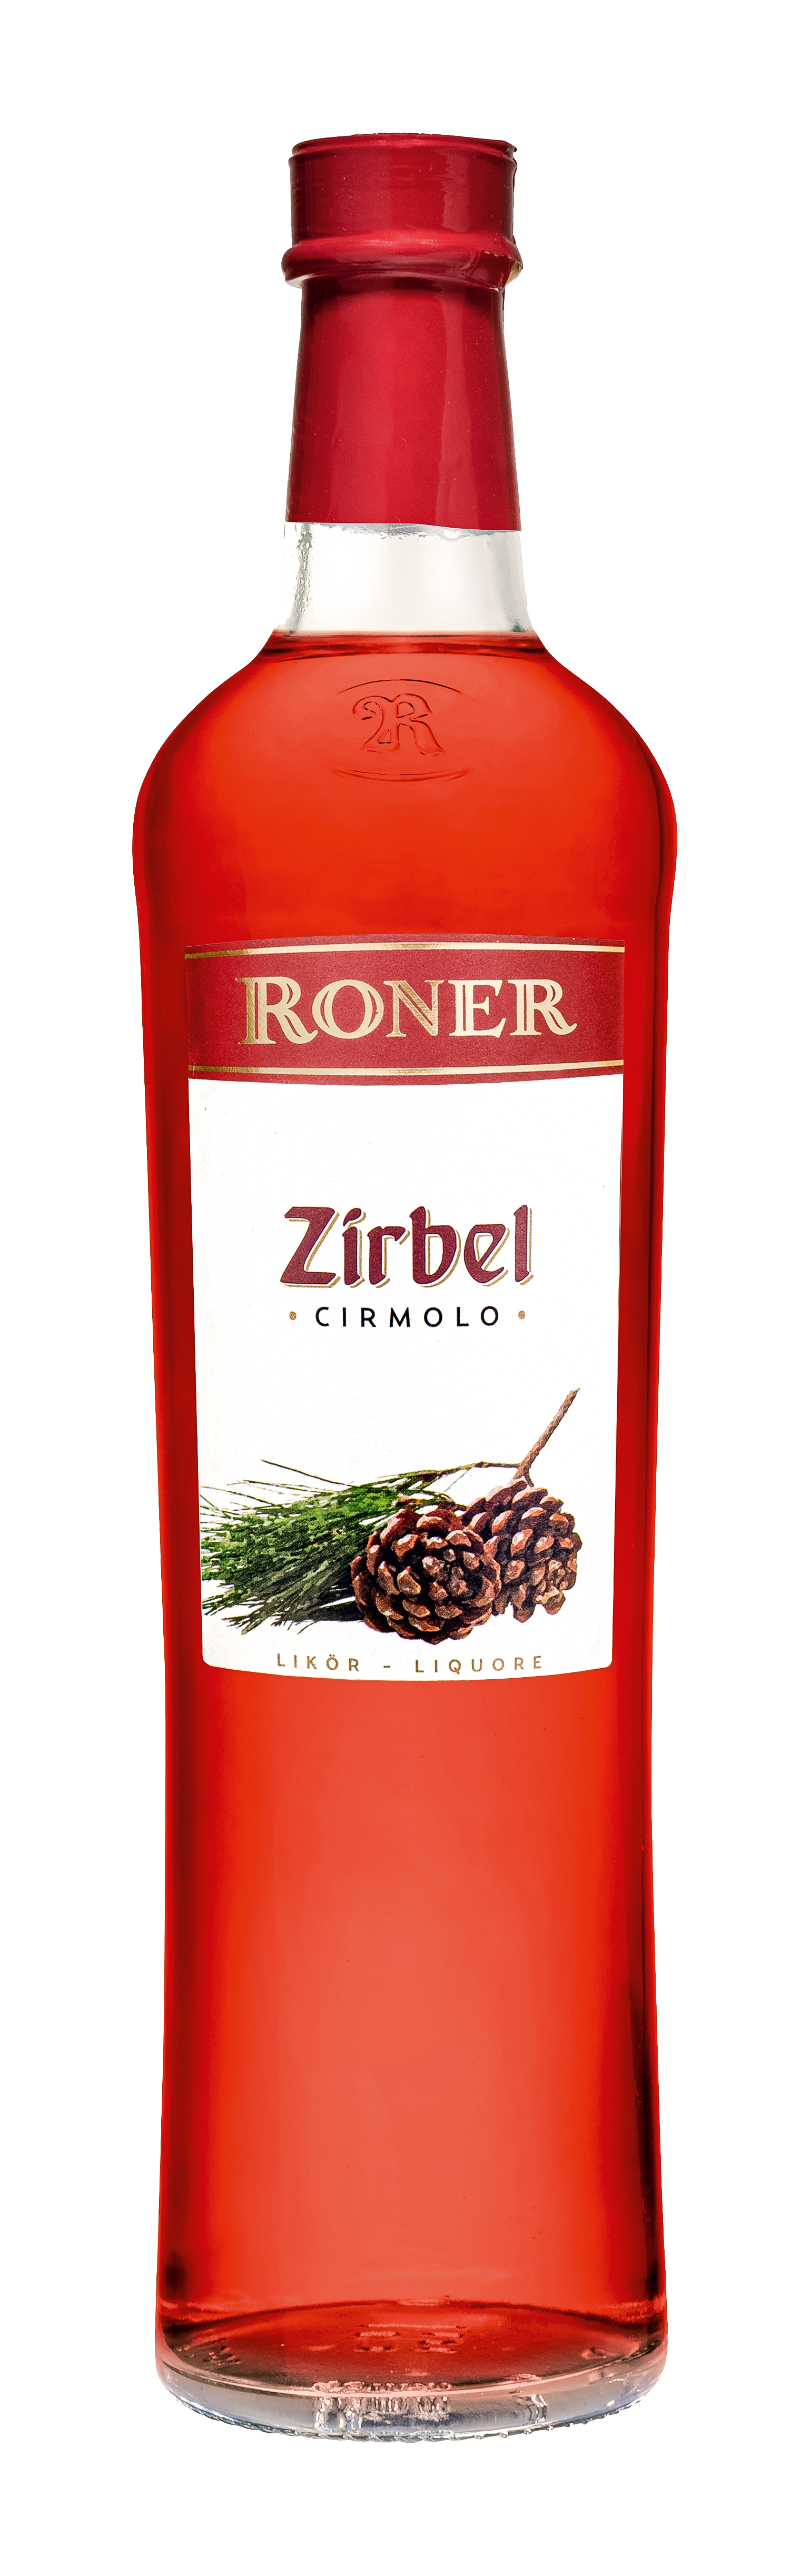 Zirbel - Pine cone liquor